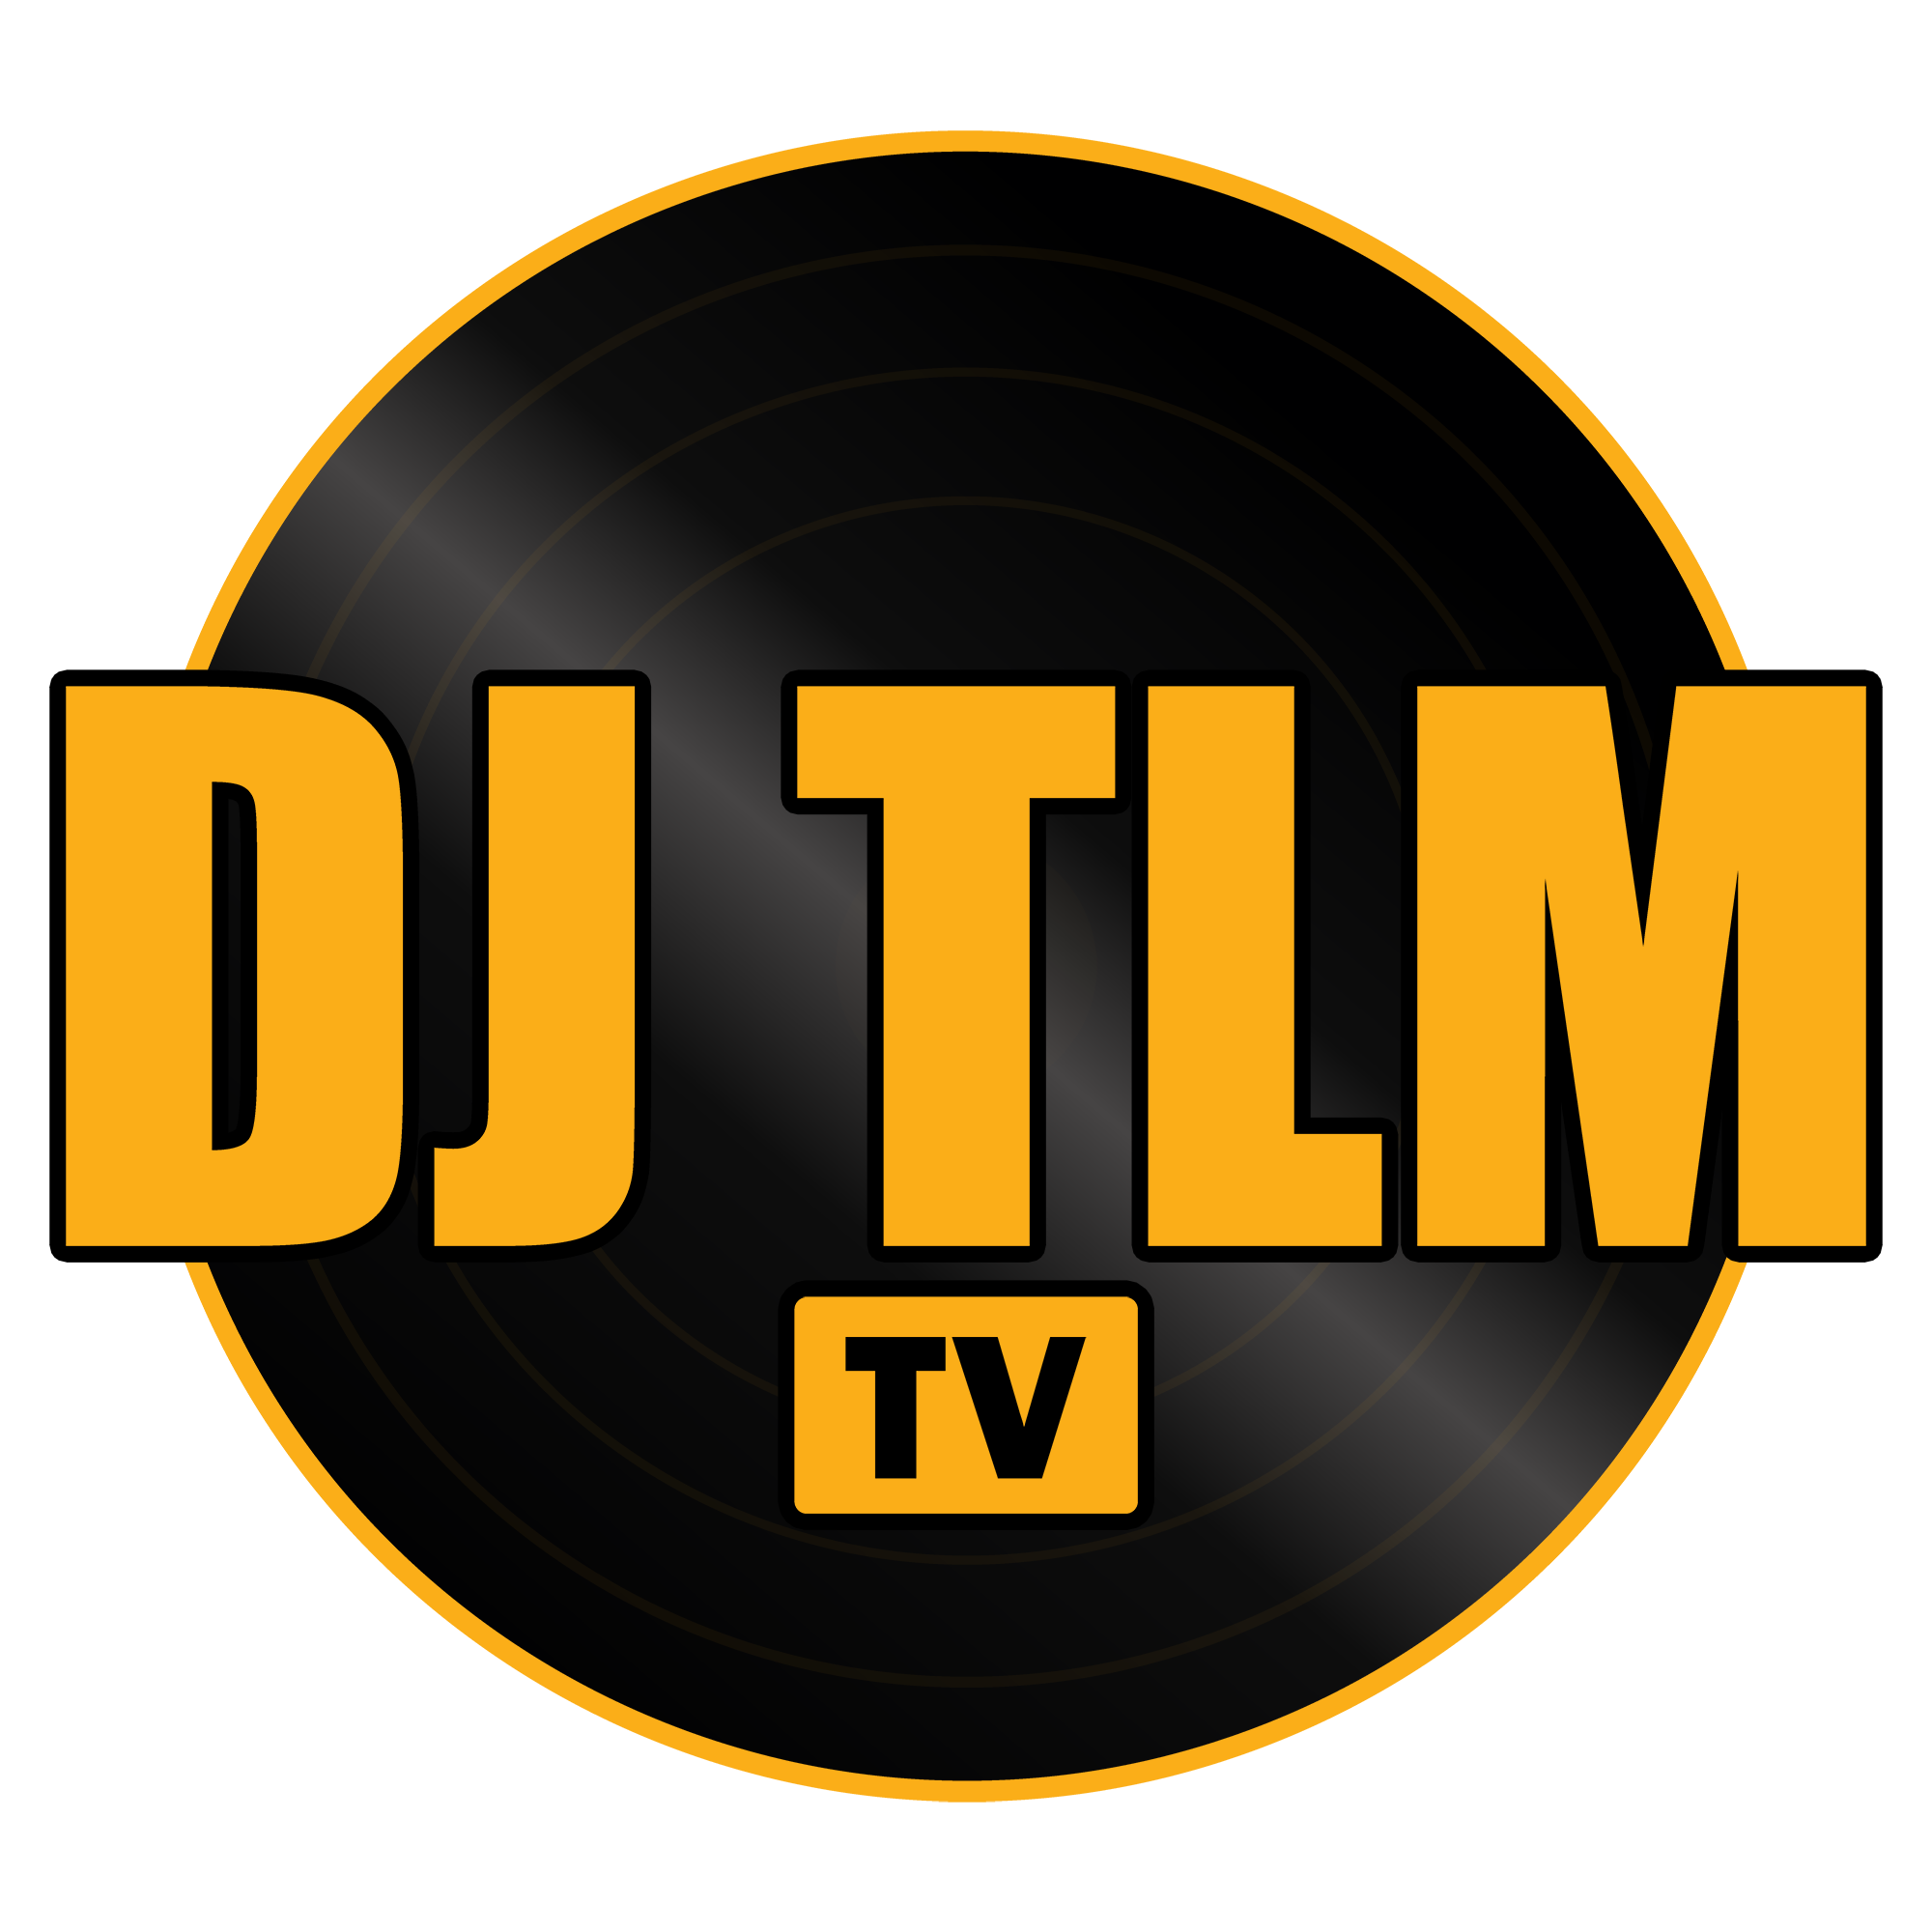 DJ TLM TV